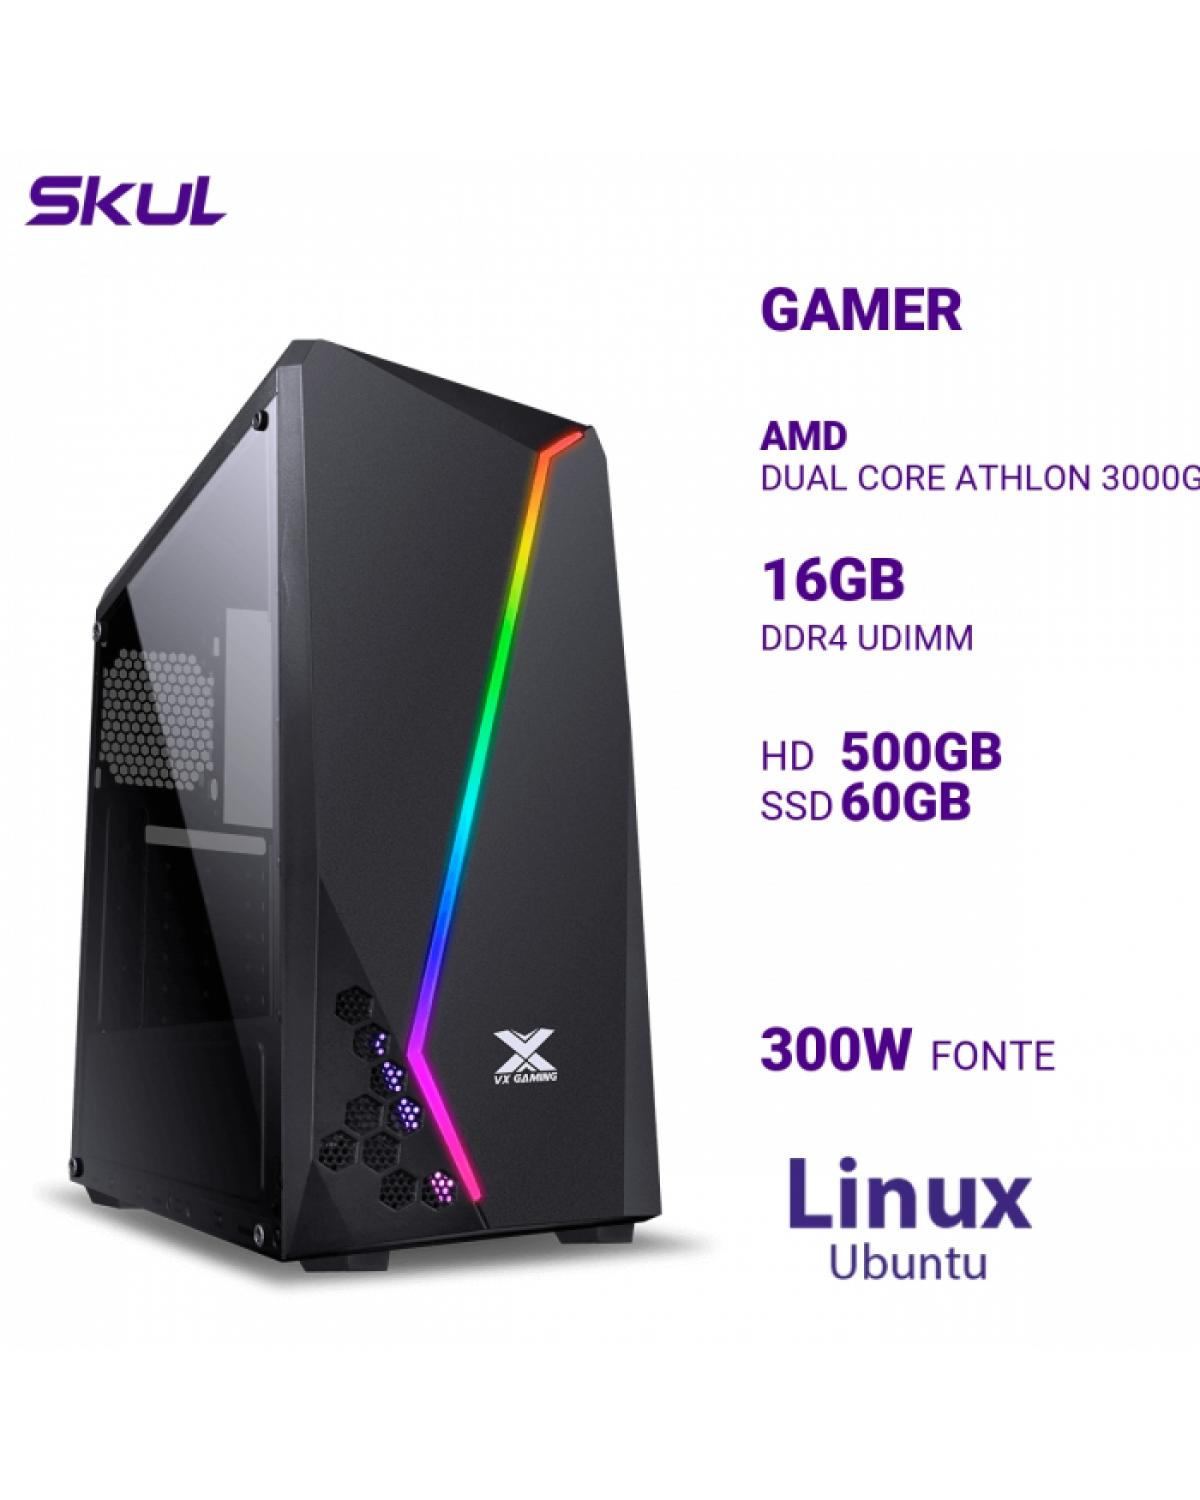 COMPUTADOR GAMER 1000 DUAL CORE ATHLON 3000G 3.50GHZ MEM 16GB DDR4 HD 500GB SSD 60GB FONTE 300W LINUX